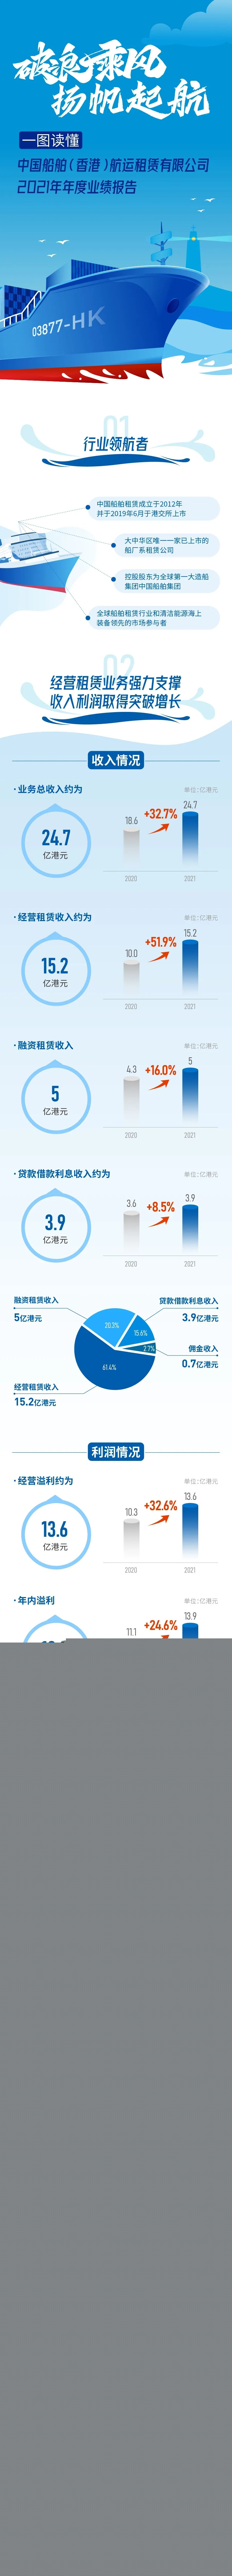 中国船舶租赁发布2021年业绩报告